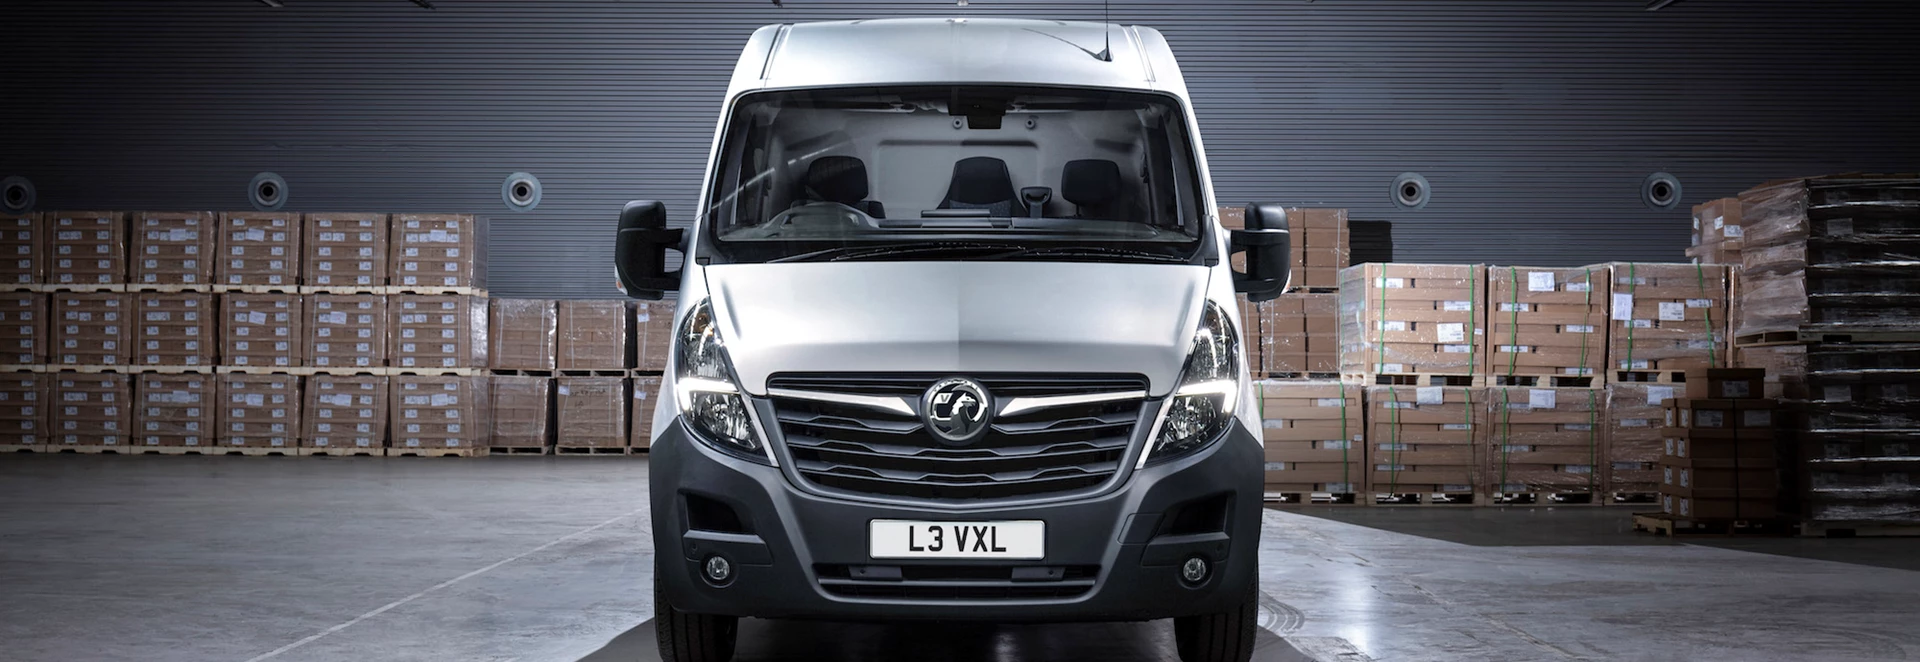 Vauxhall reveals updated Movano van 